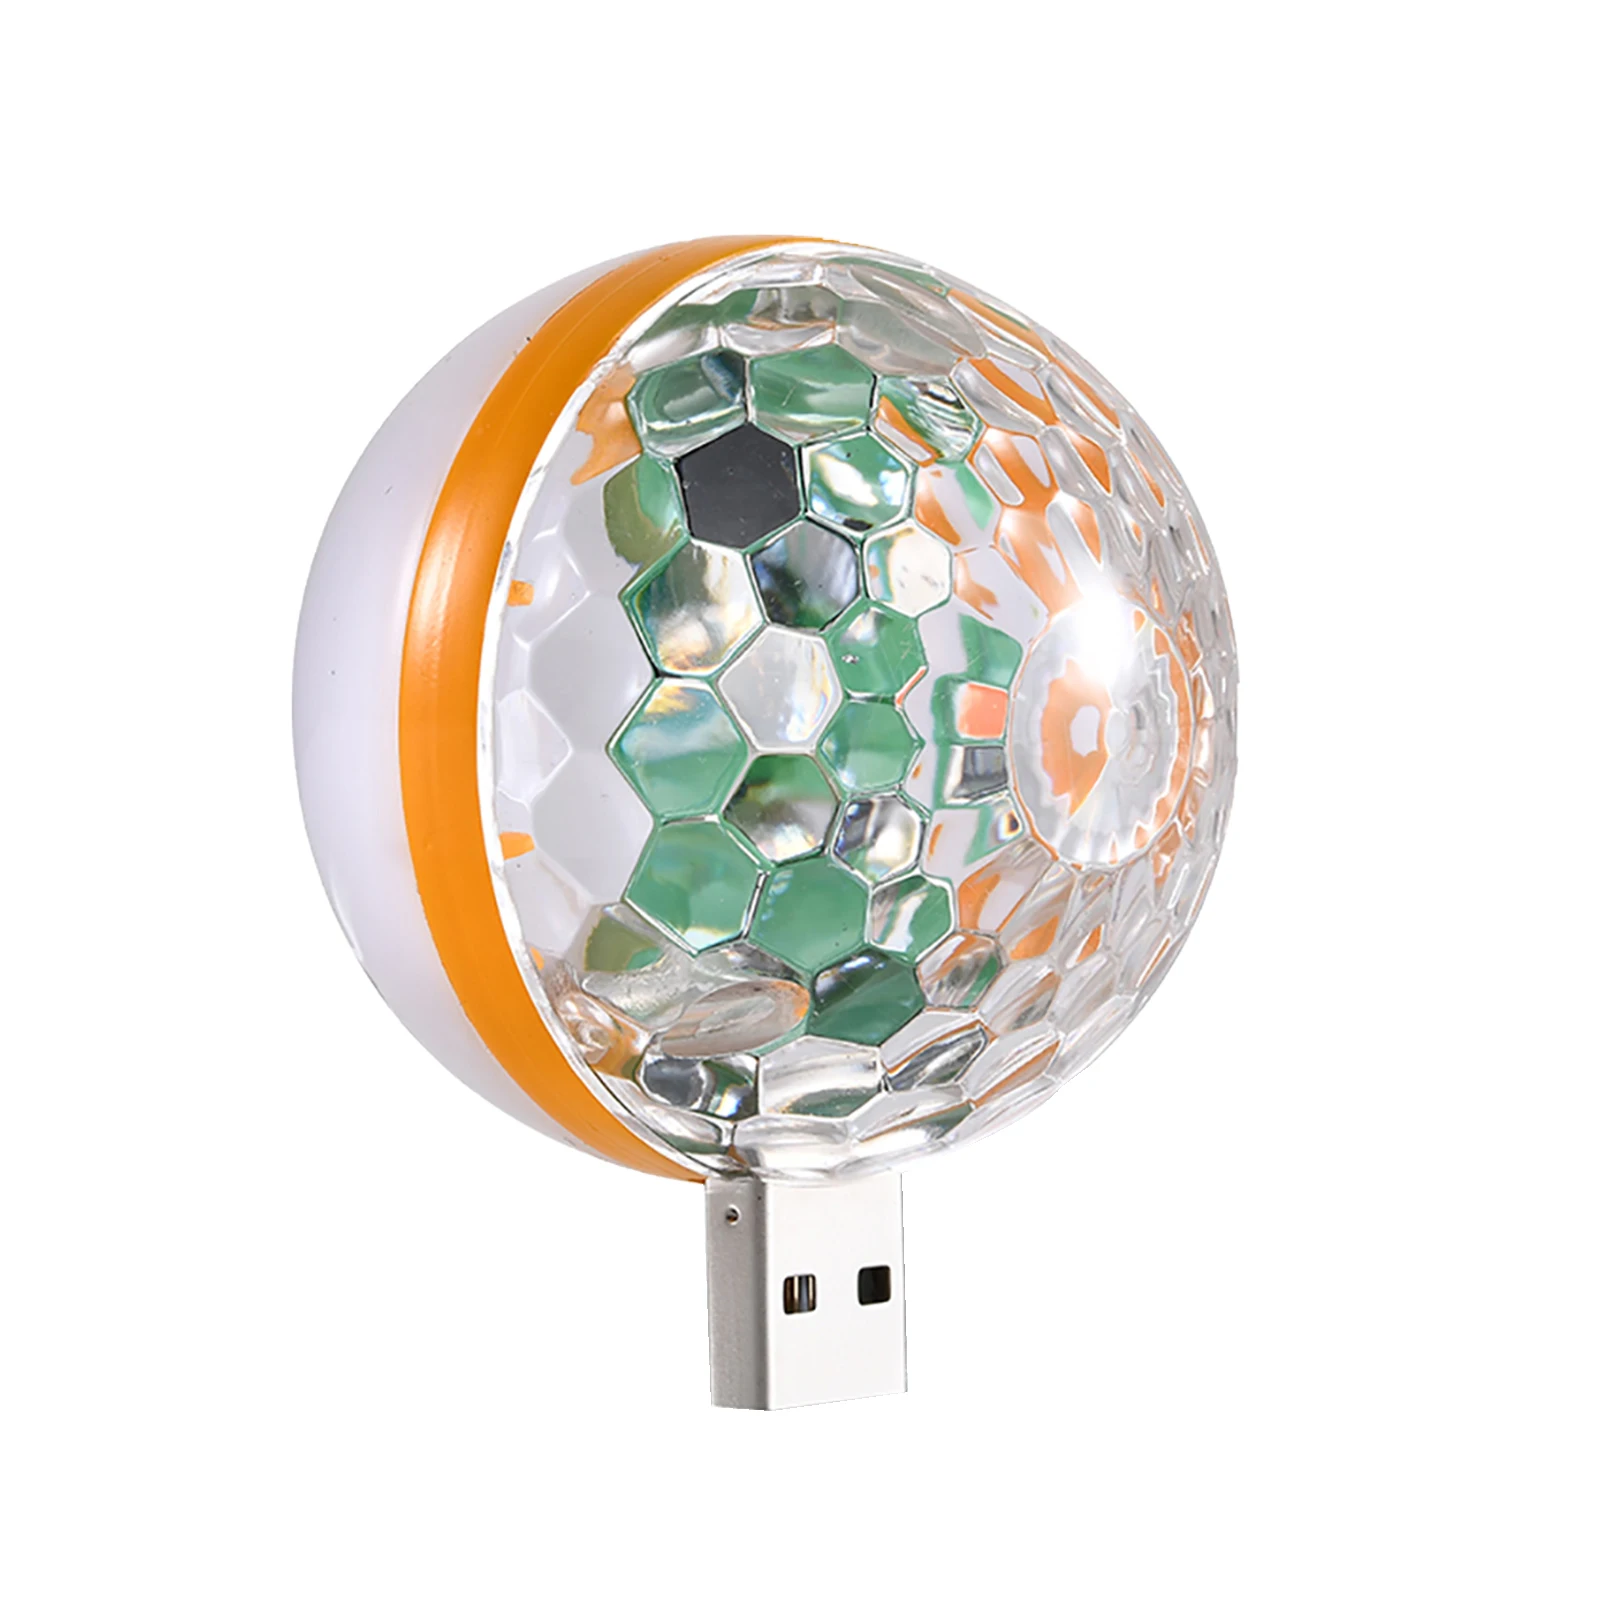 

Диско-шар свет светильник s внутри вашего автомобиля проектор лампа широкий зоны облучения красивый красочный стробоскоп свет для вечеринок автомобиля